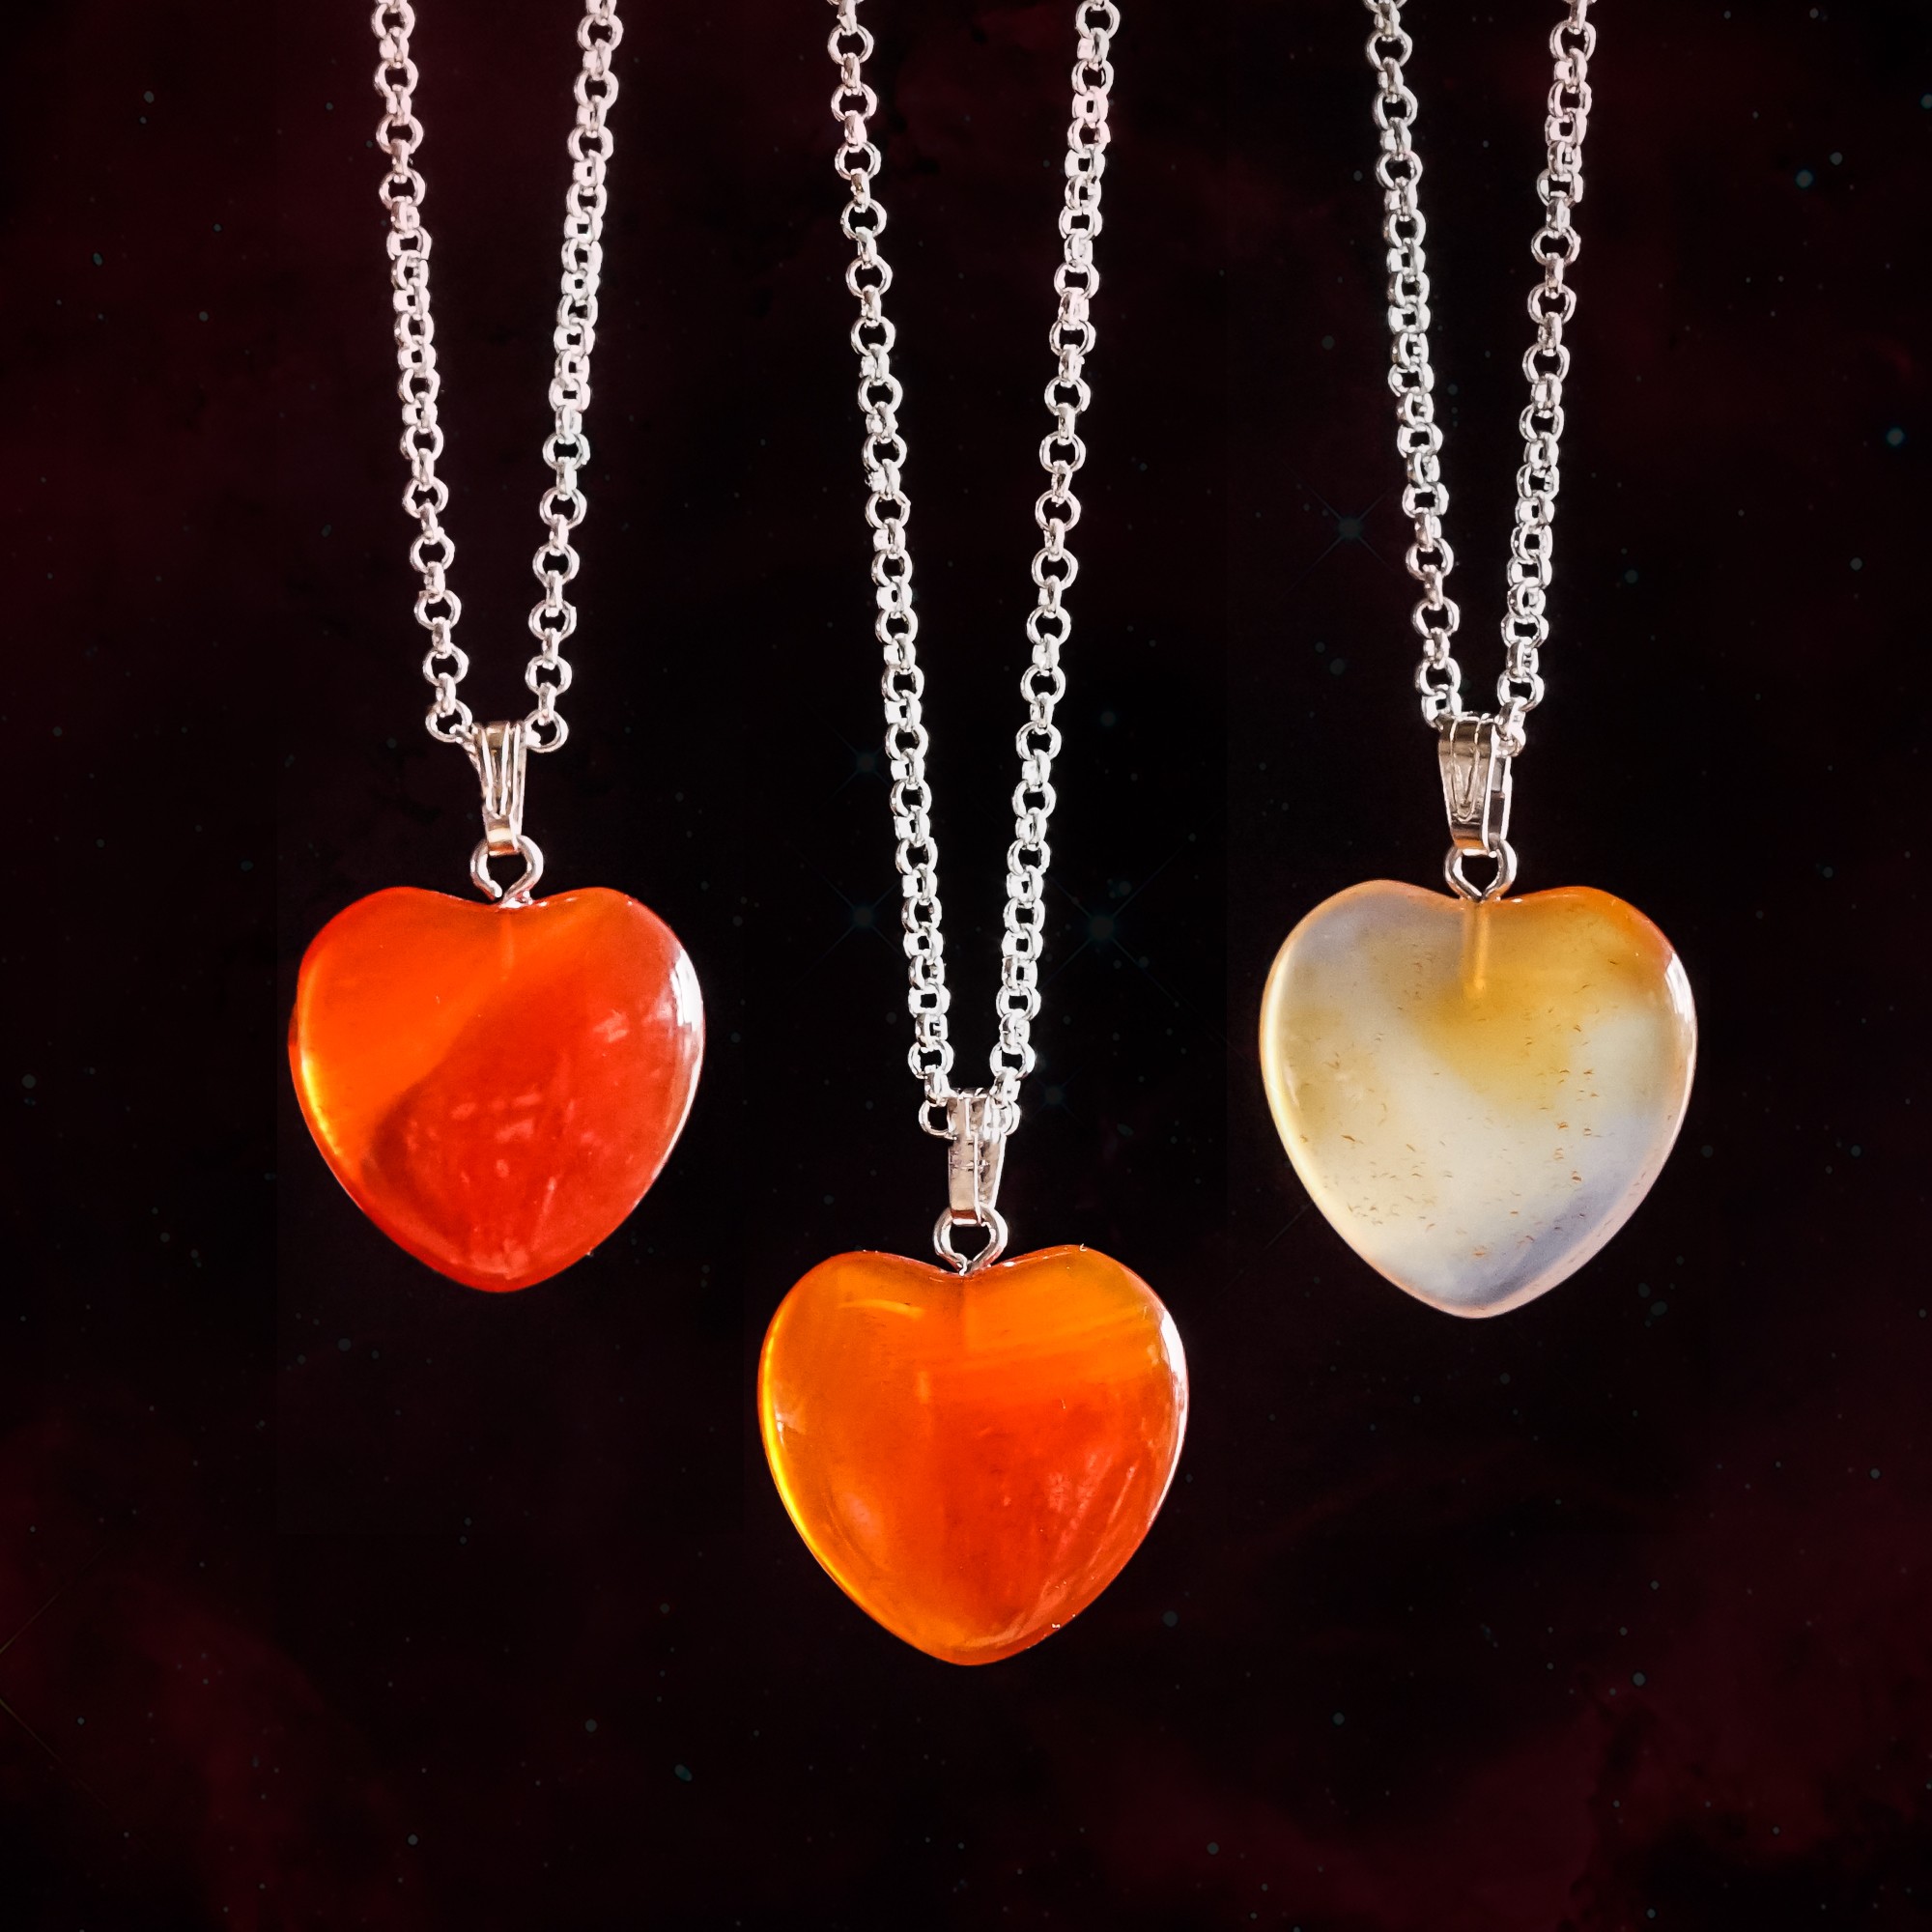 carnelian heart pendants